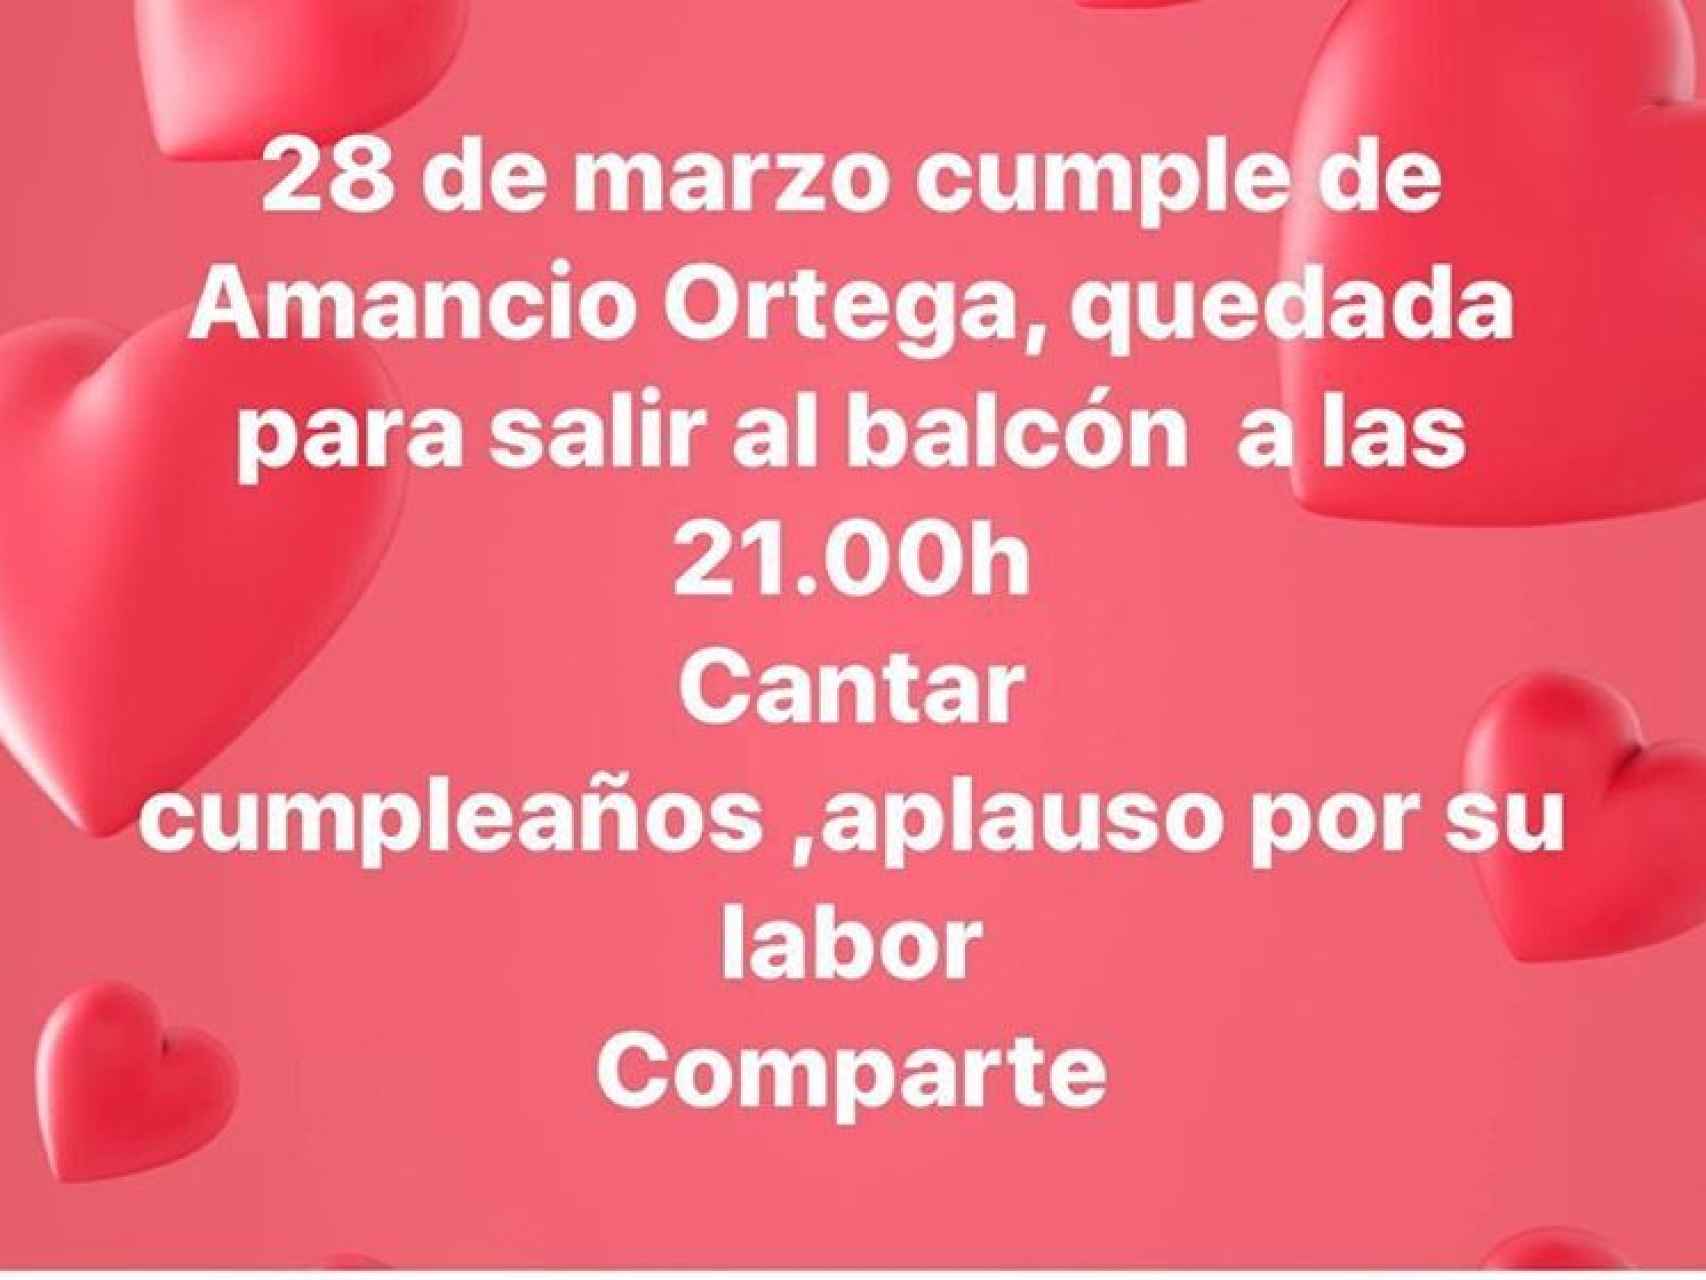 Mensaje en el que se invita a los ciudadanos a aplaudir a Amancio Ortega por su cumpleaños.